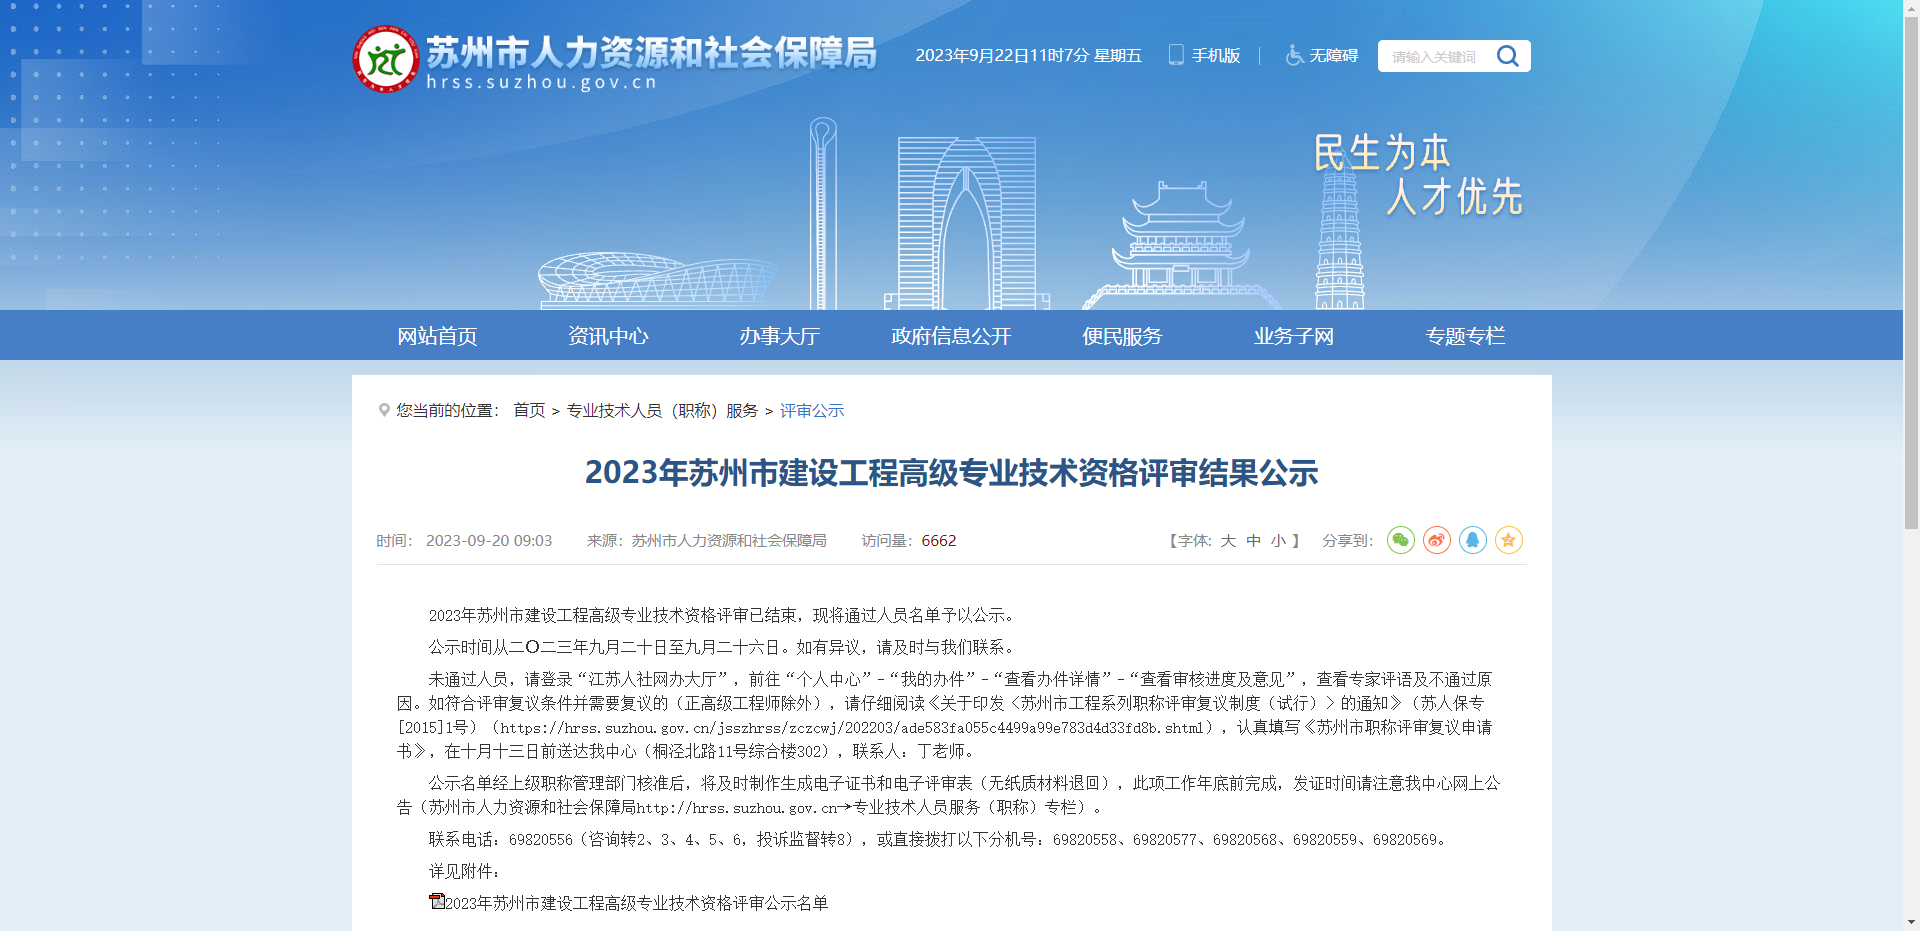 [江苏省]2023年苏州市建设工程高级专业技术资格评审结果公示